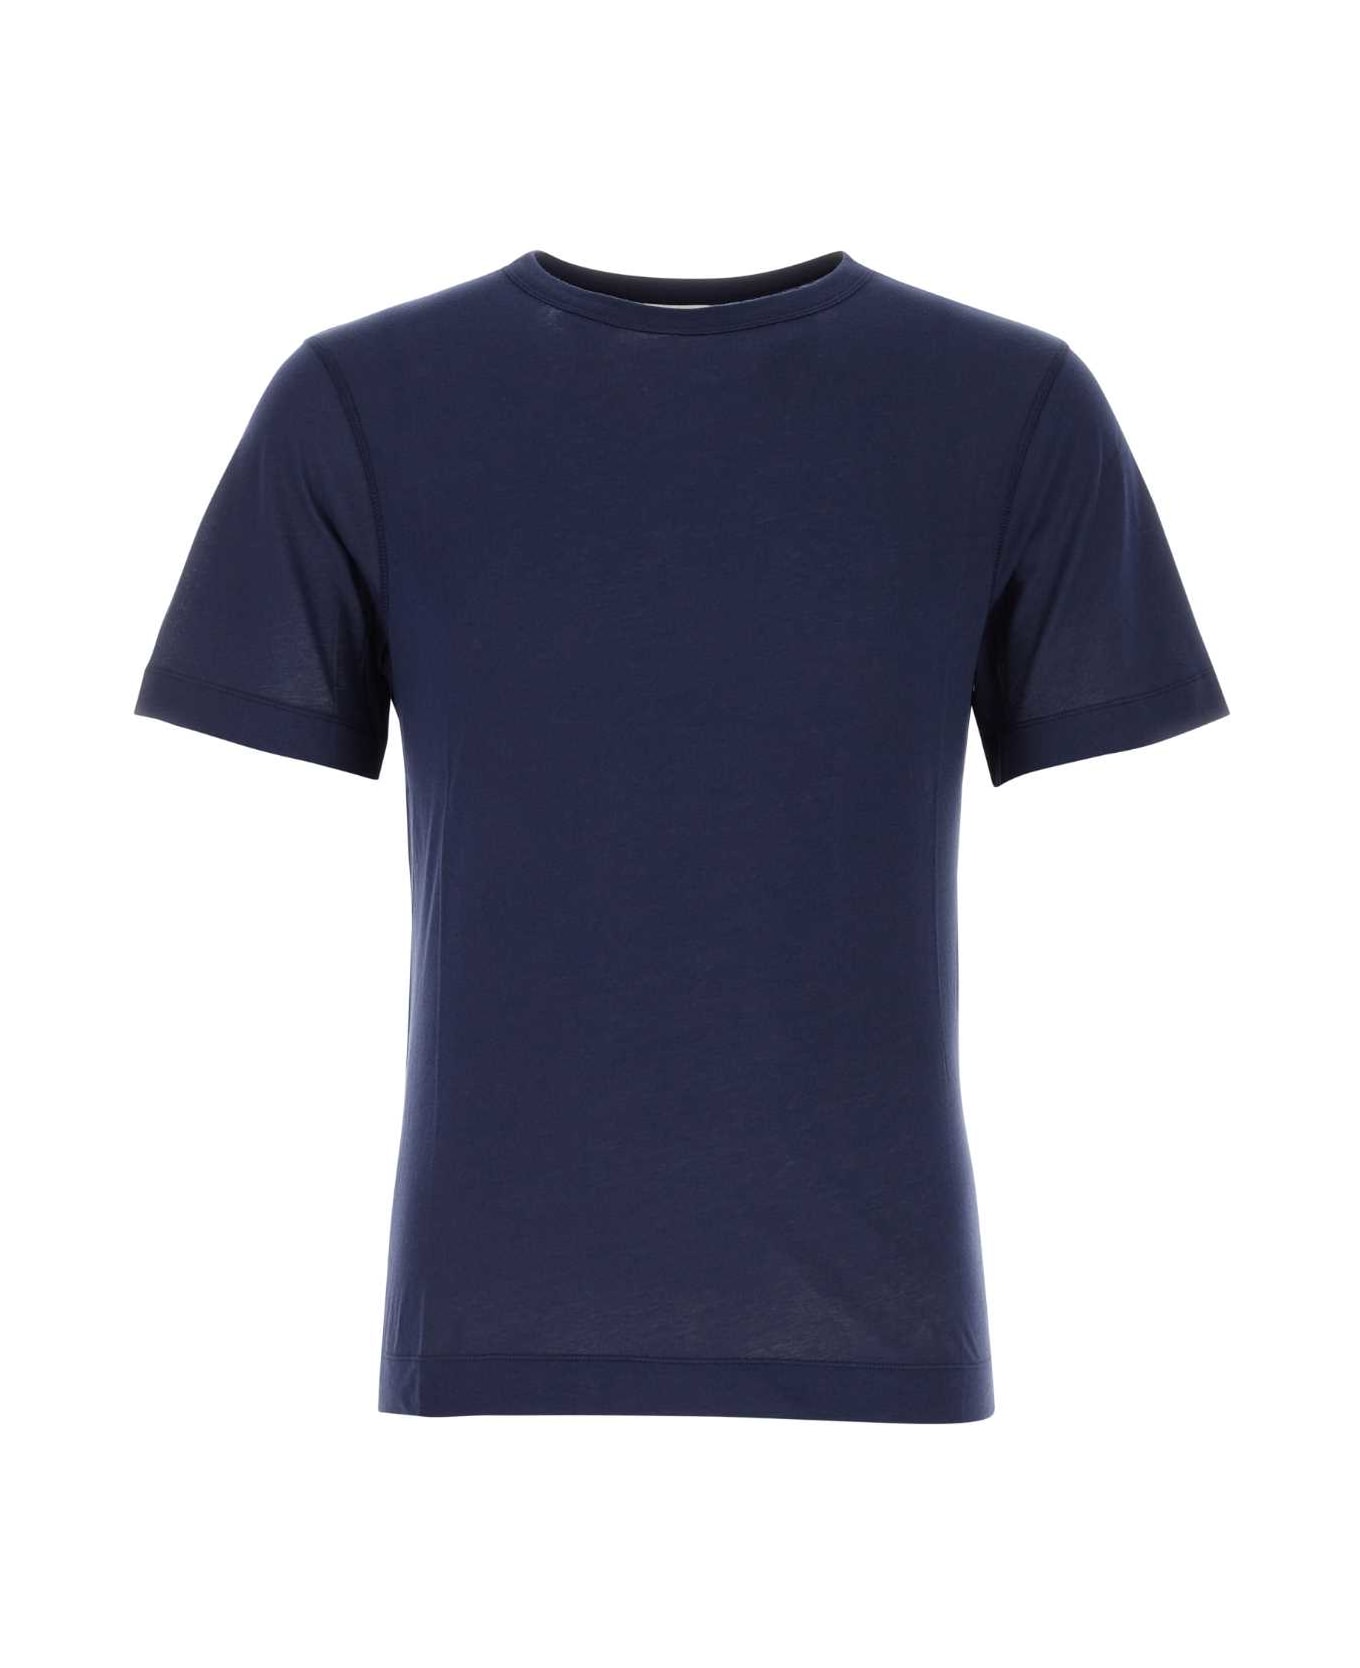 Dries Van Noten Navy Blue Cotton T-shirt - DARK BLUE